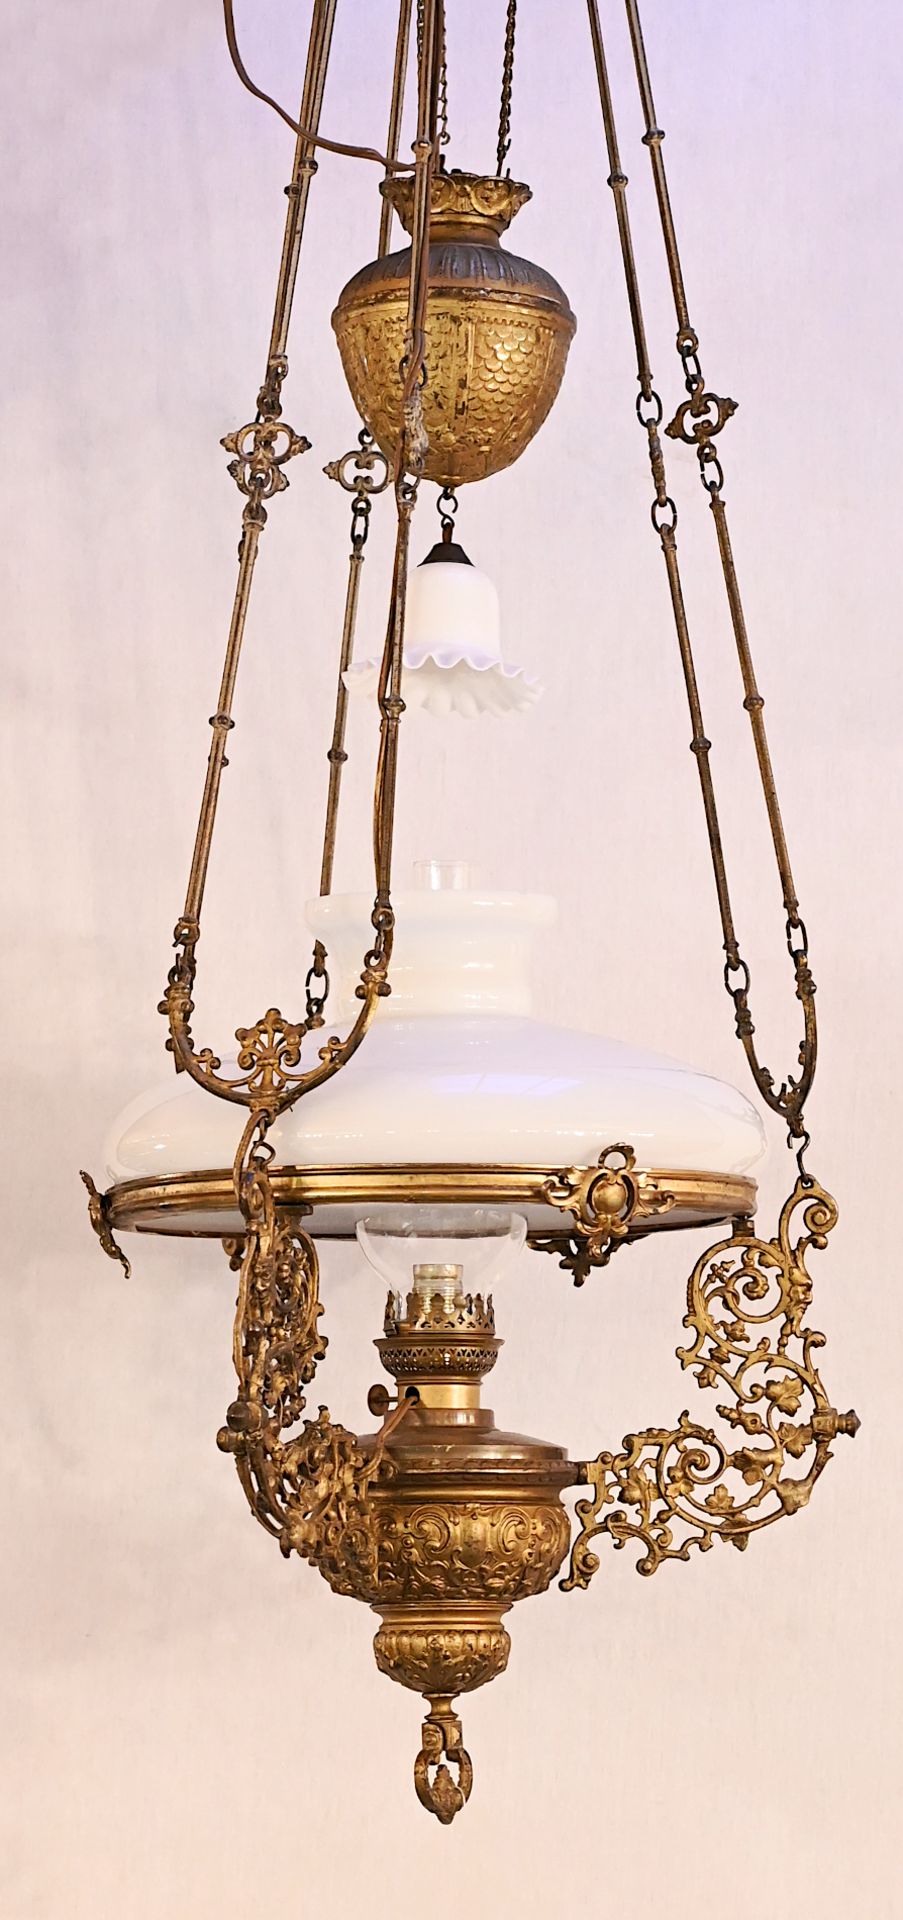 1 Hänge-/Petroleumlampe wohl 19. Jh. Messinggehäuse mit weißem Glasschirm später elektrifiziert, H c